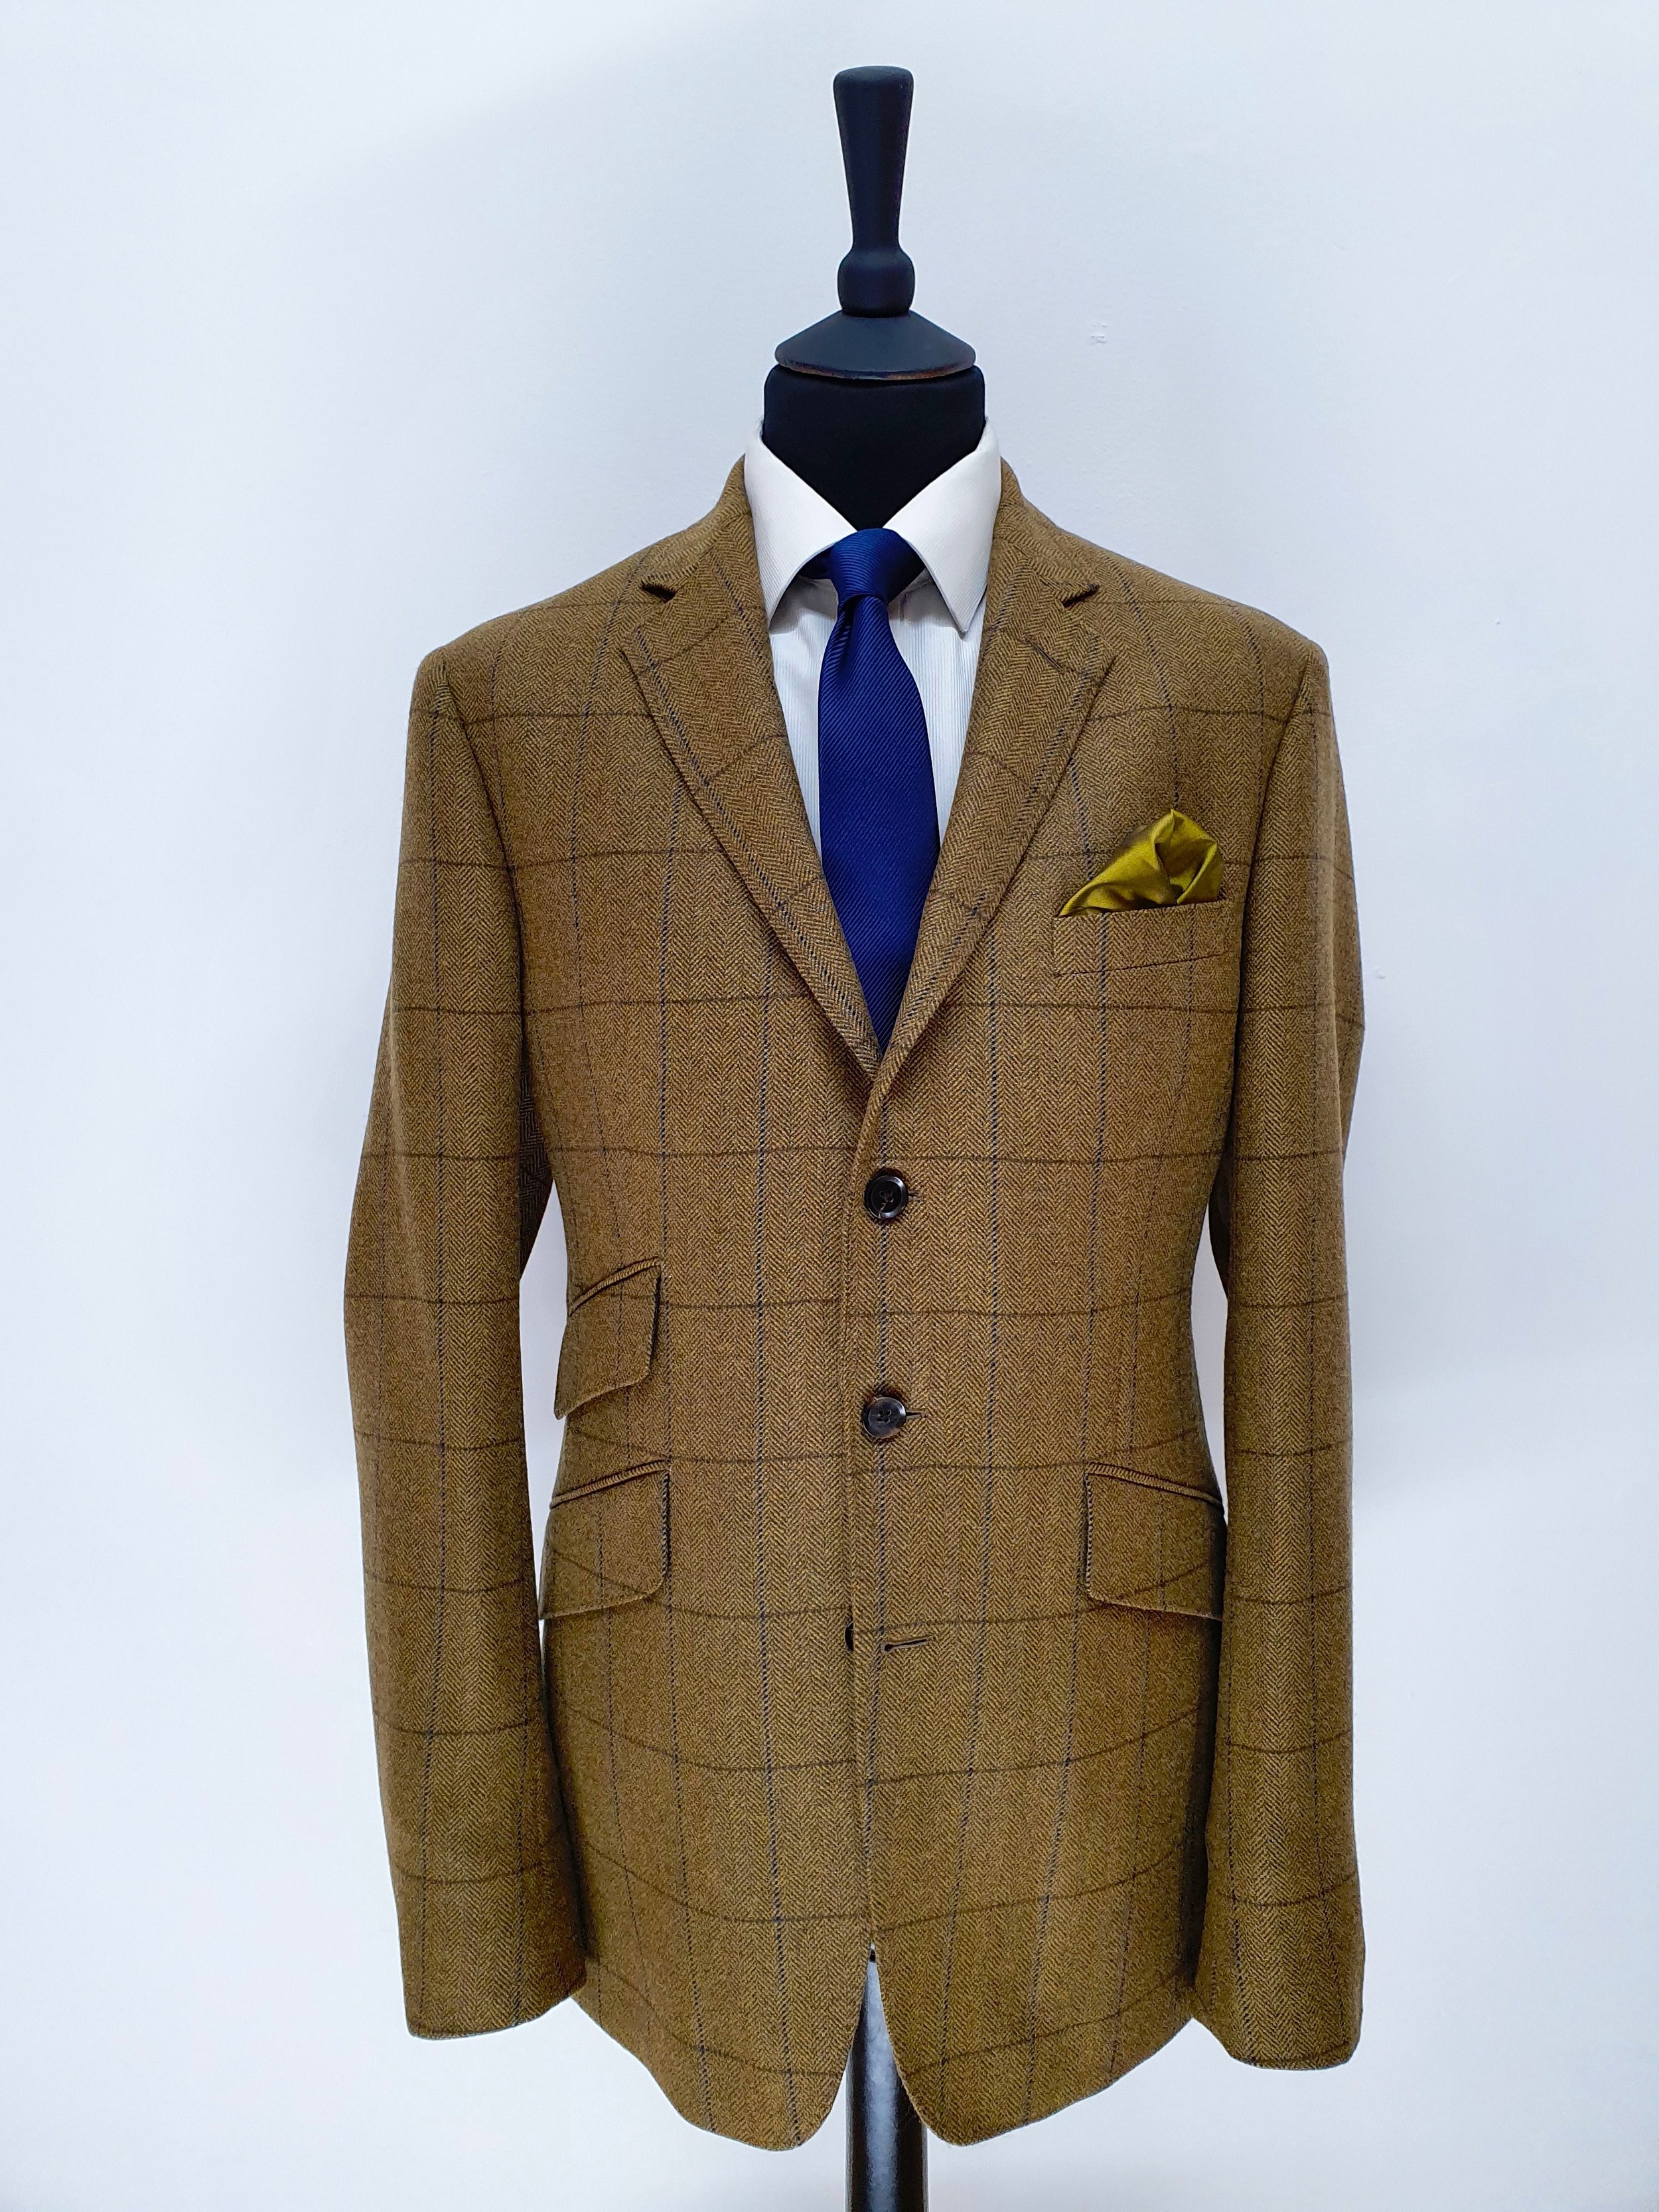 2 Piece suit in porter and harding Glenroyal tweed (2).jpg